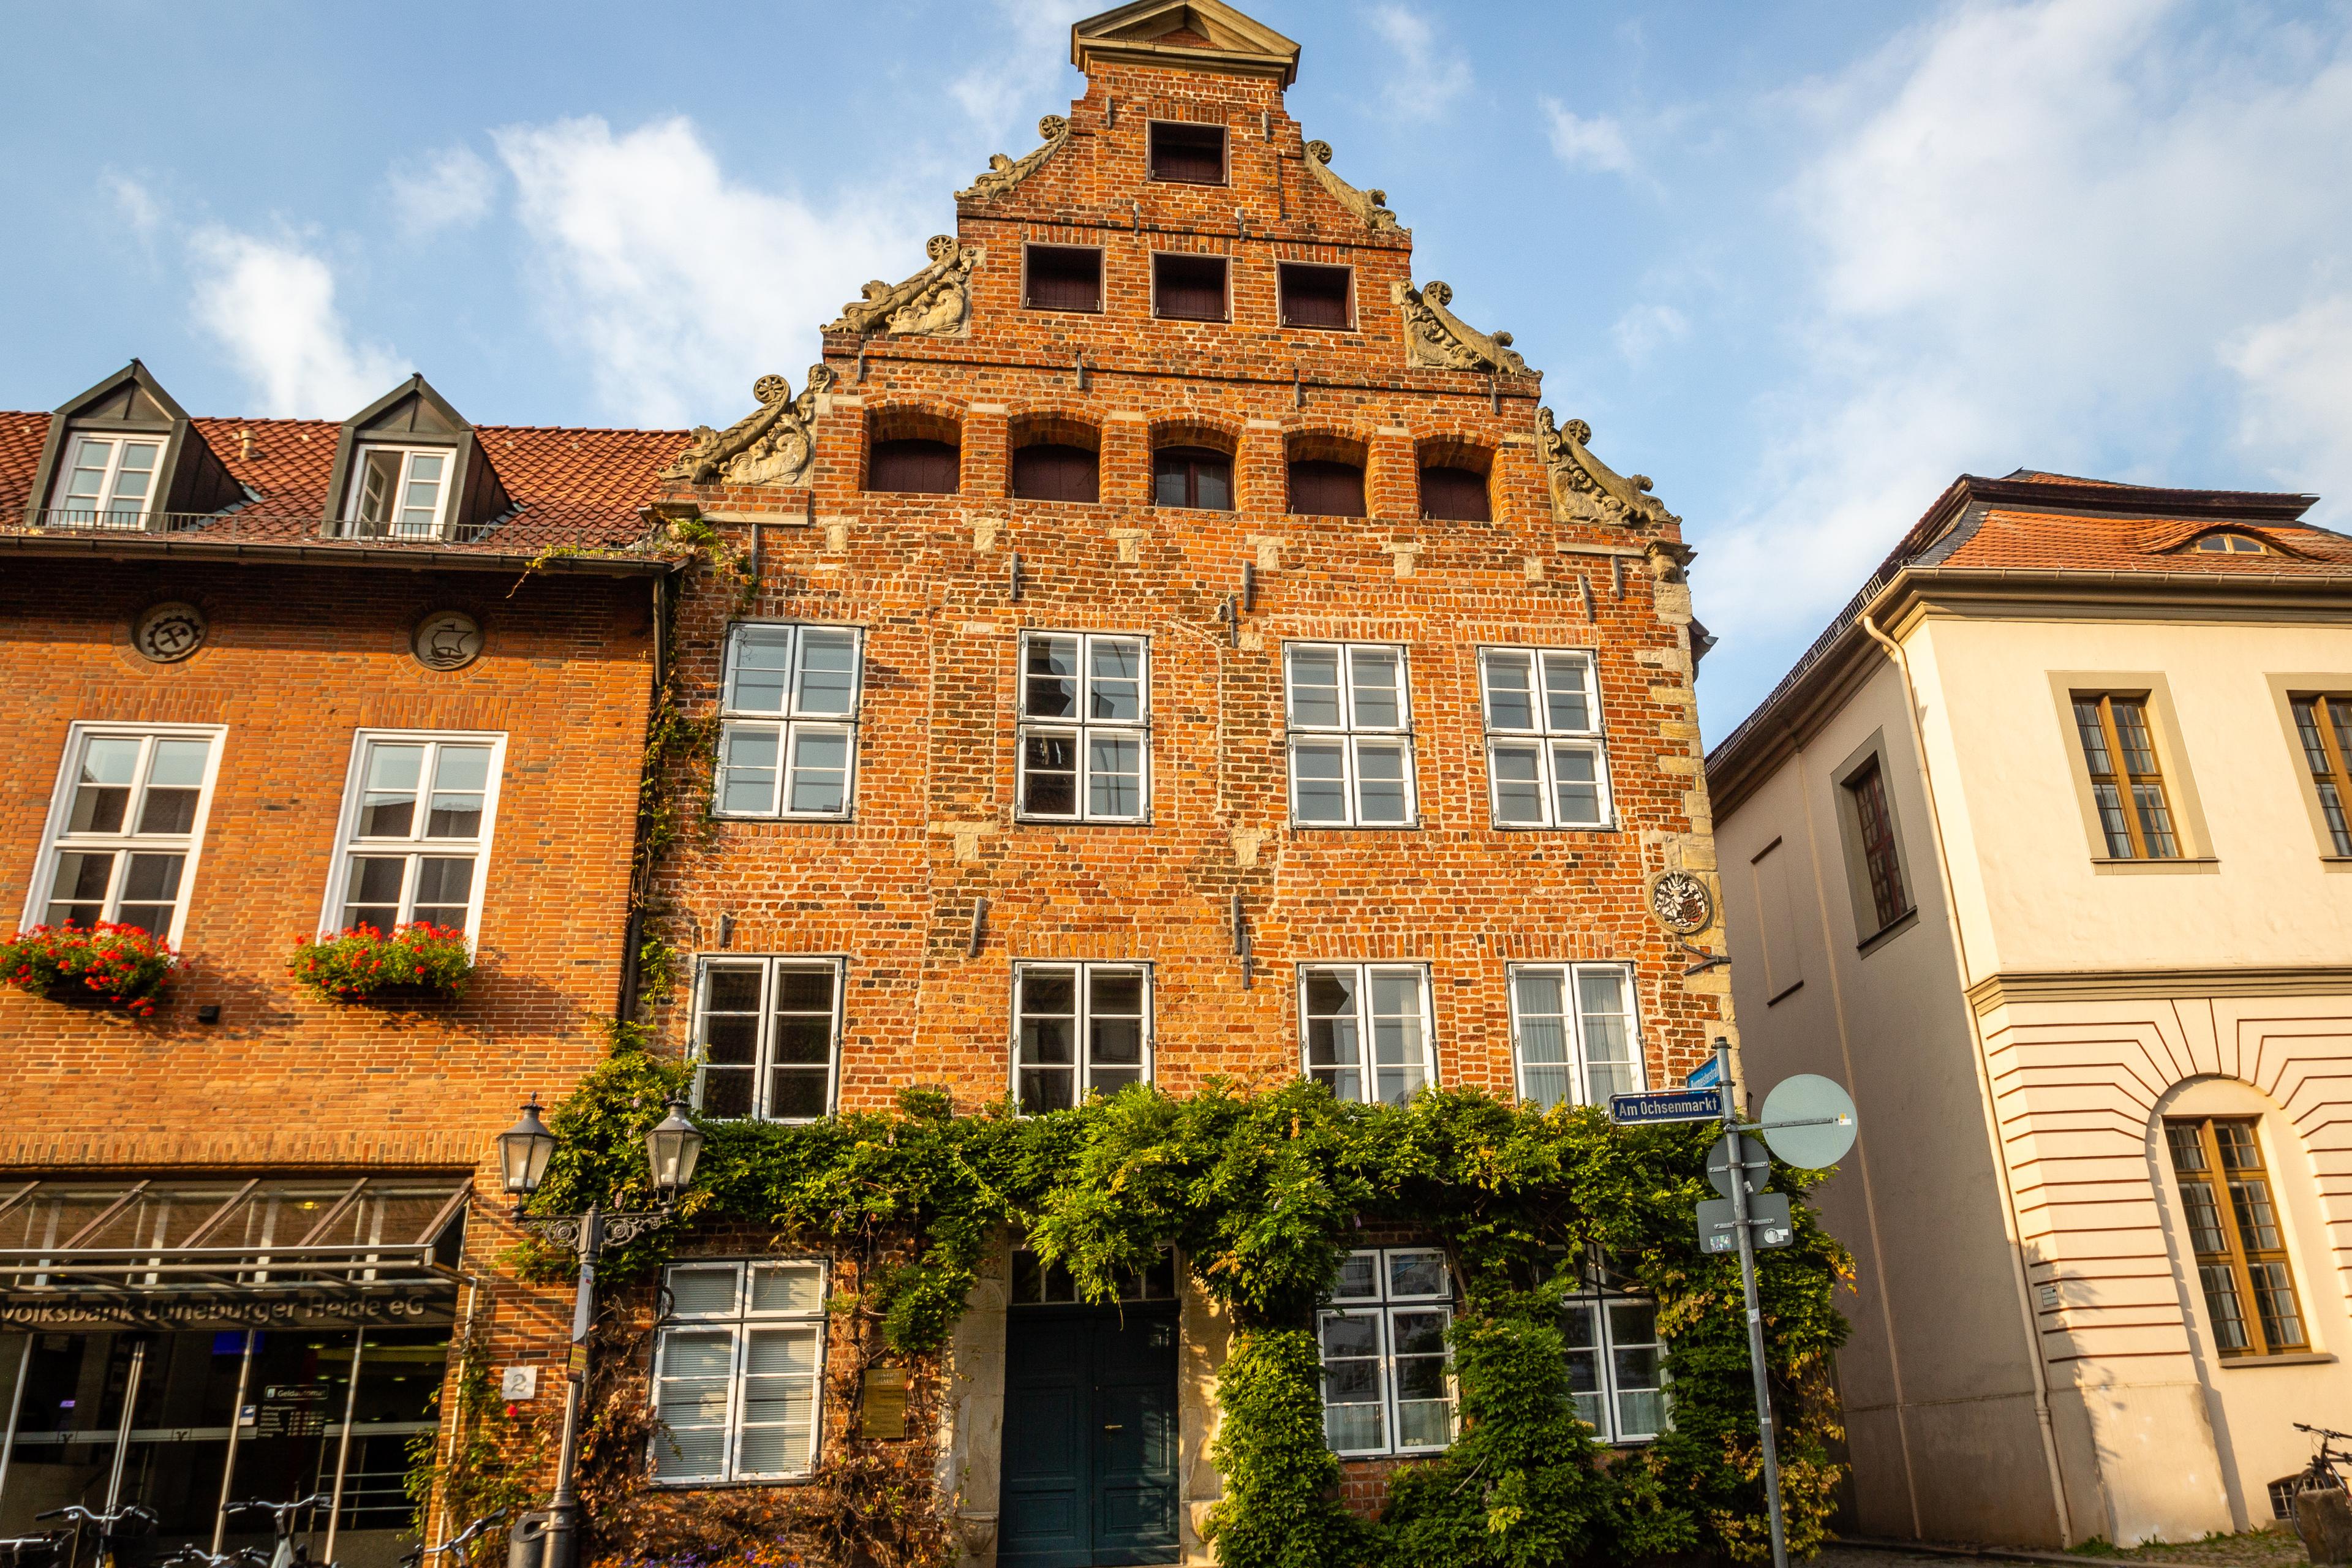 Heinrich-Heine-Haus in Lüneburg